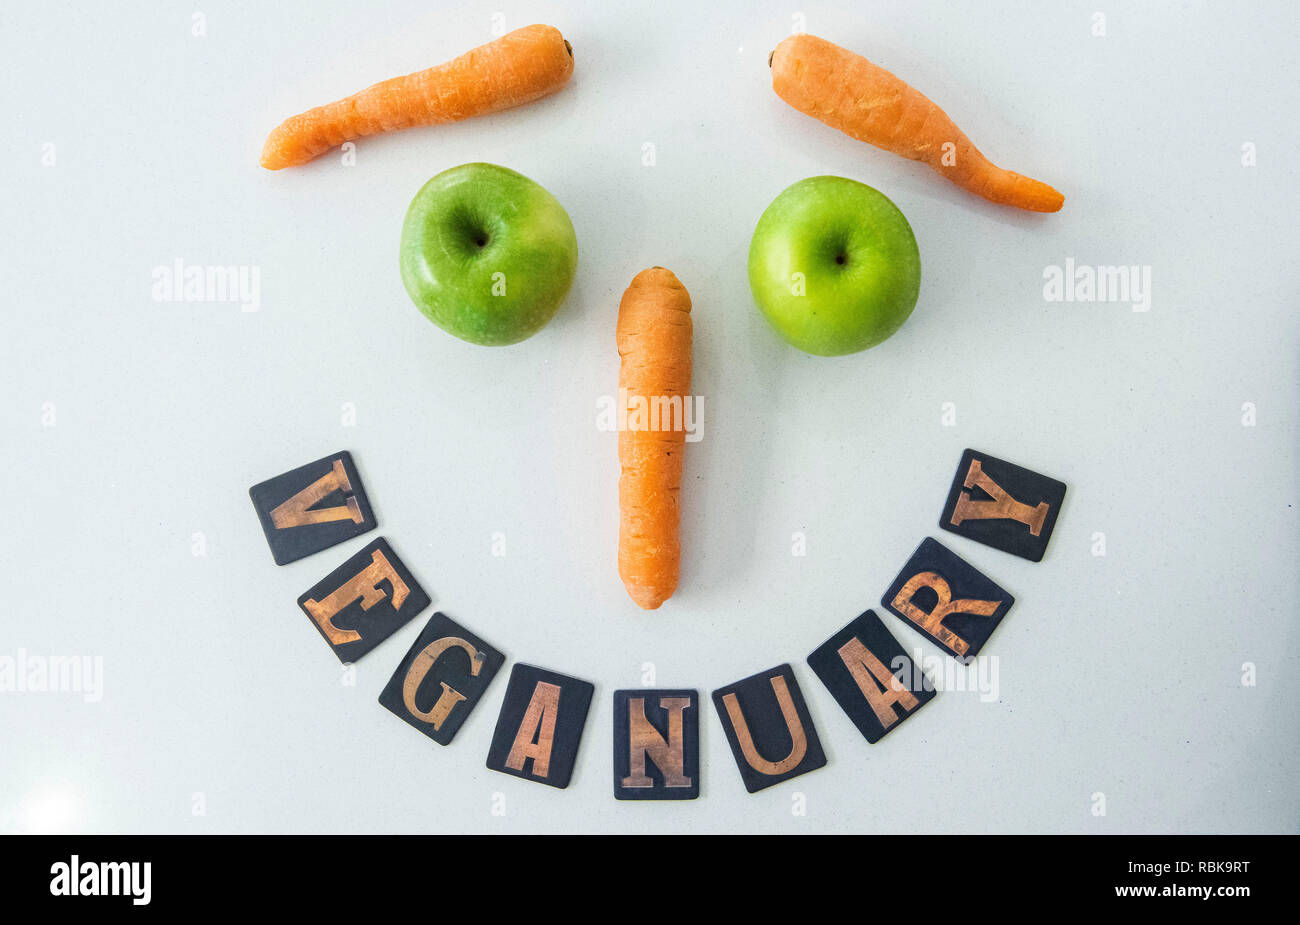 Zeichen für Veganuary mit Karotten und Äpfel. Stockfoto